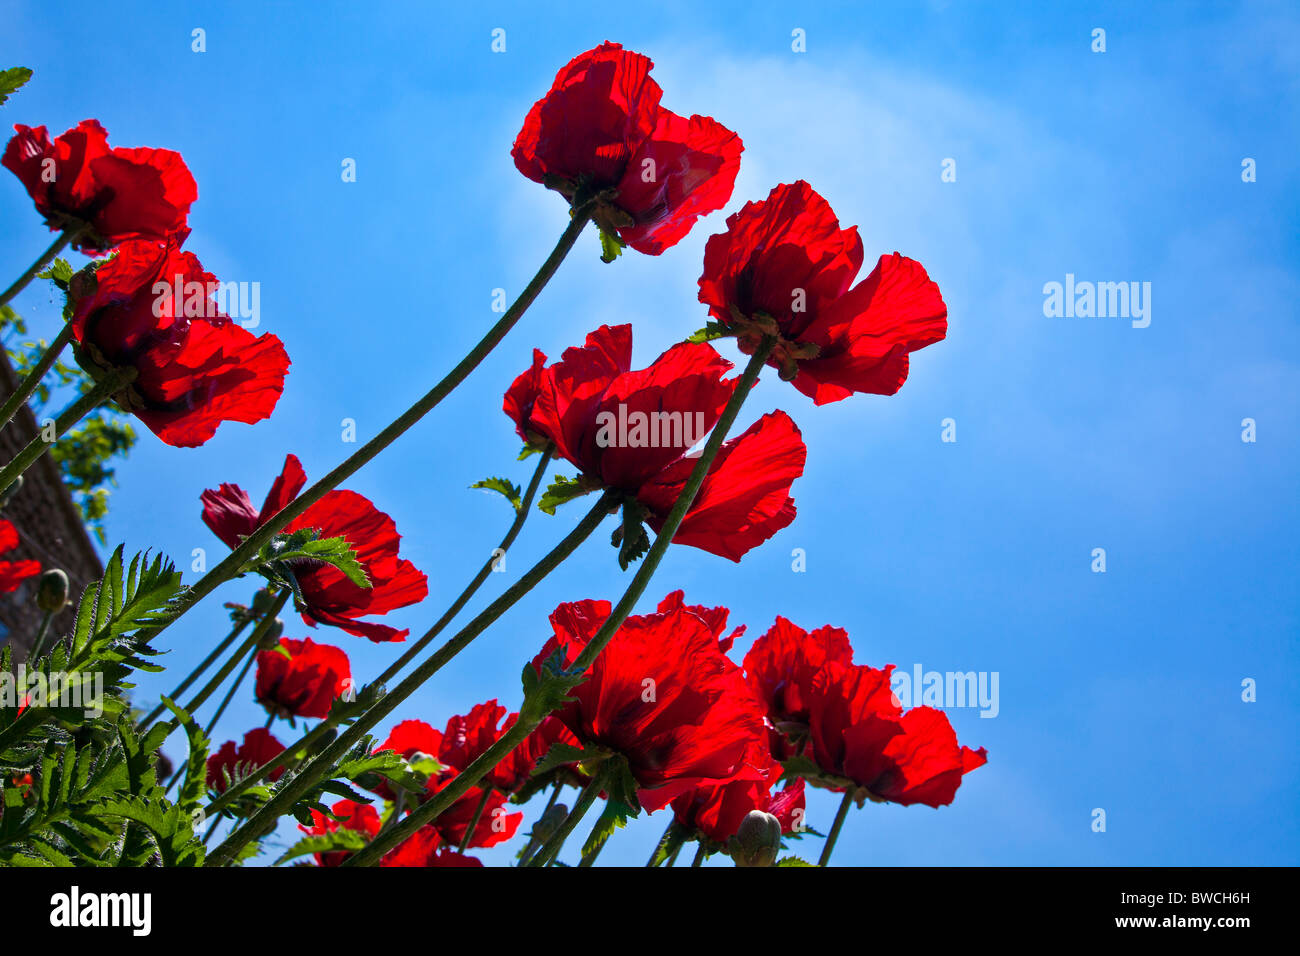 Amapolas rojas, Papaver, en un jardín frente a un cielo azul claro Foto de stock